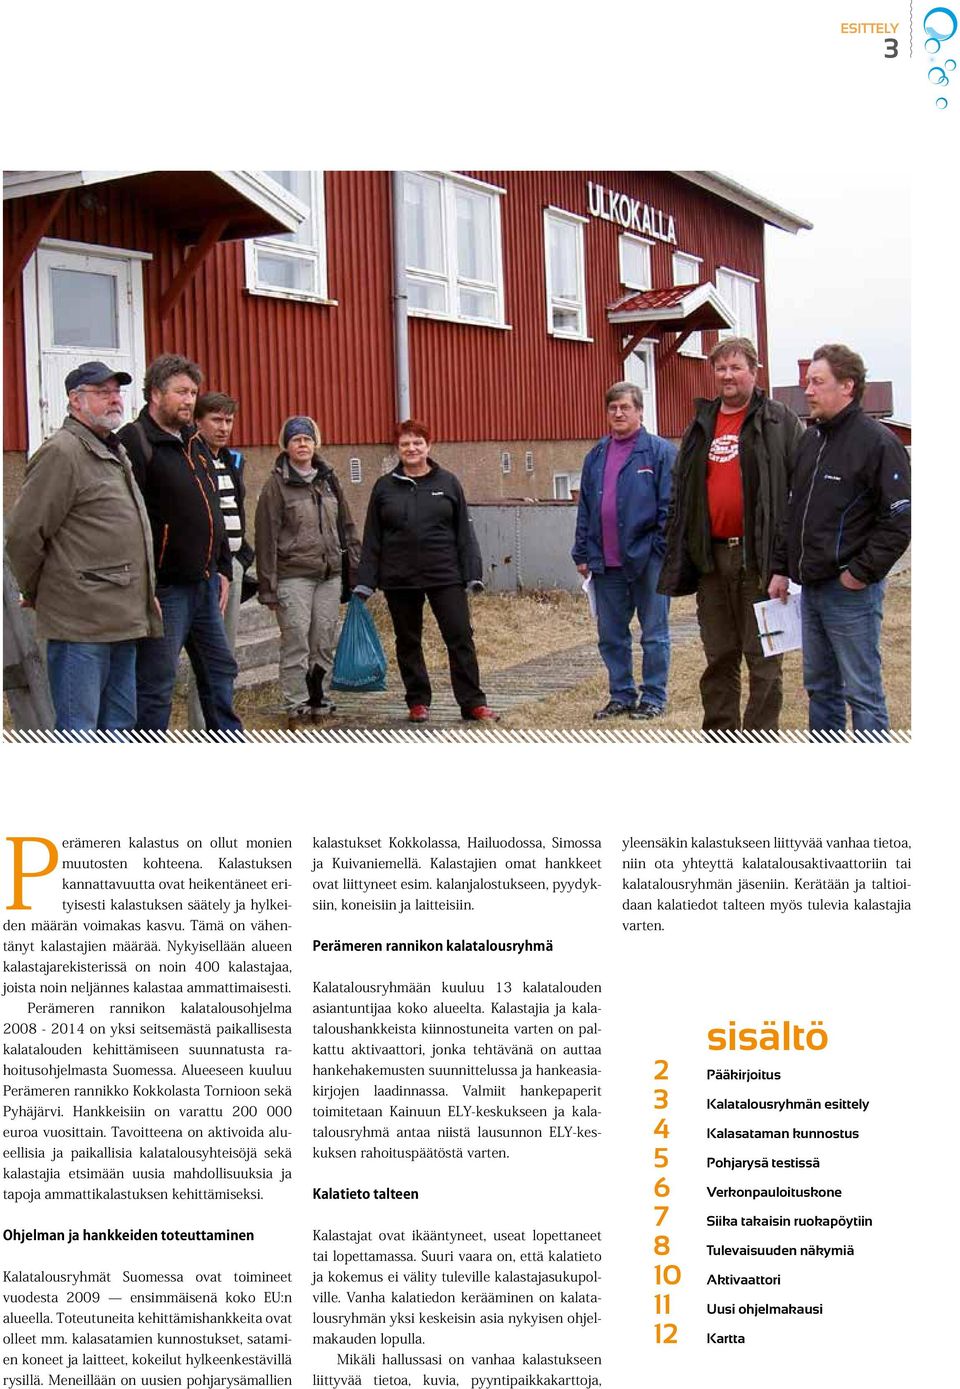 Perämeren rannikon kalatalousohjelma 2008-2014 on yksi seitsemästä paikallisesta kalatalouden kehittämiseen suunnatusta rahoitusohjelmasta Suomessa.